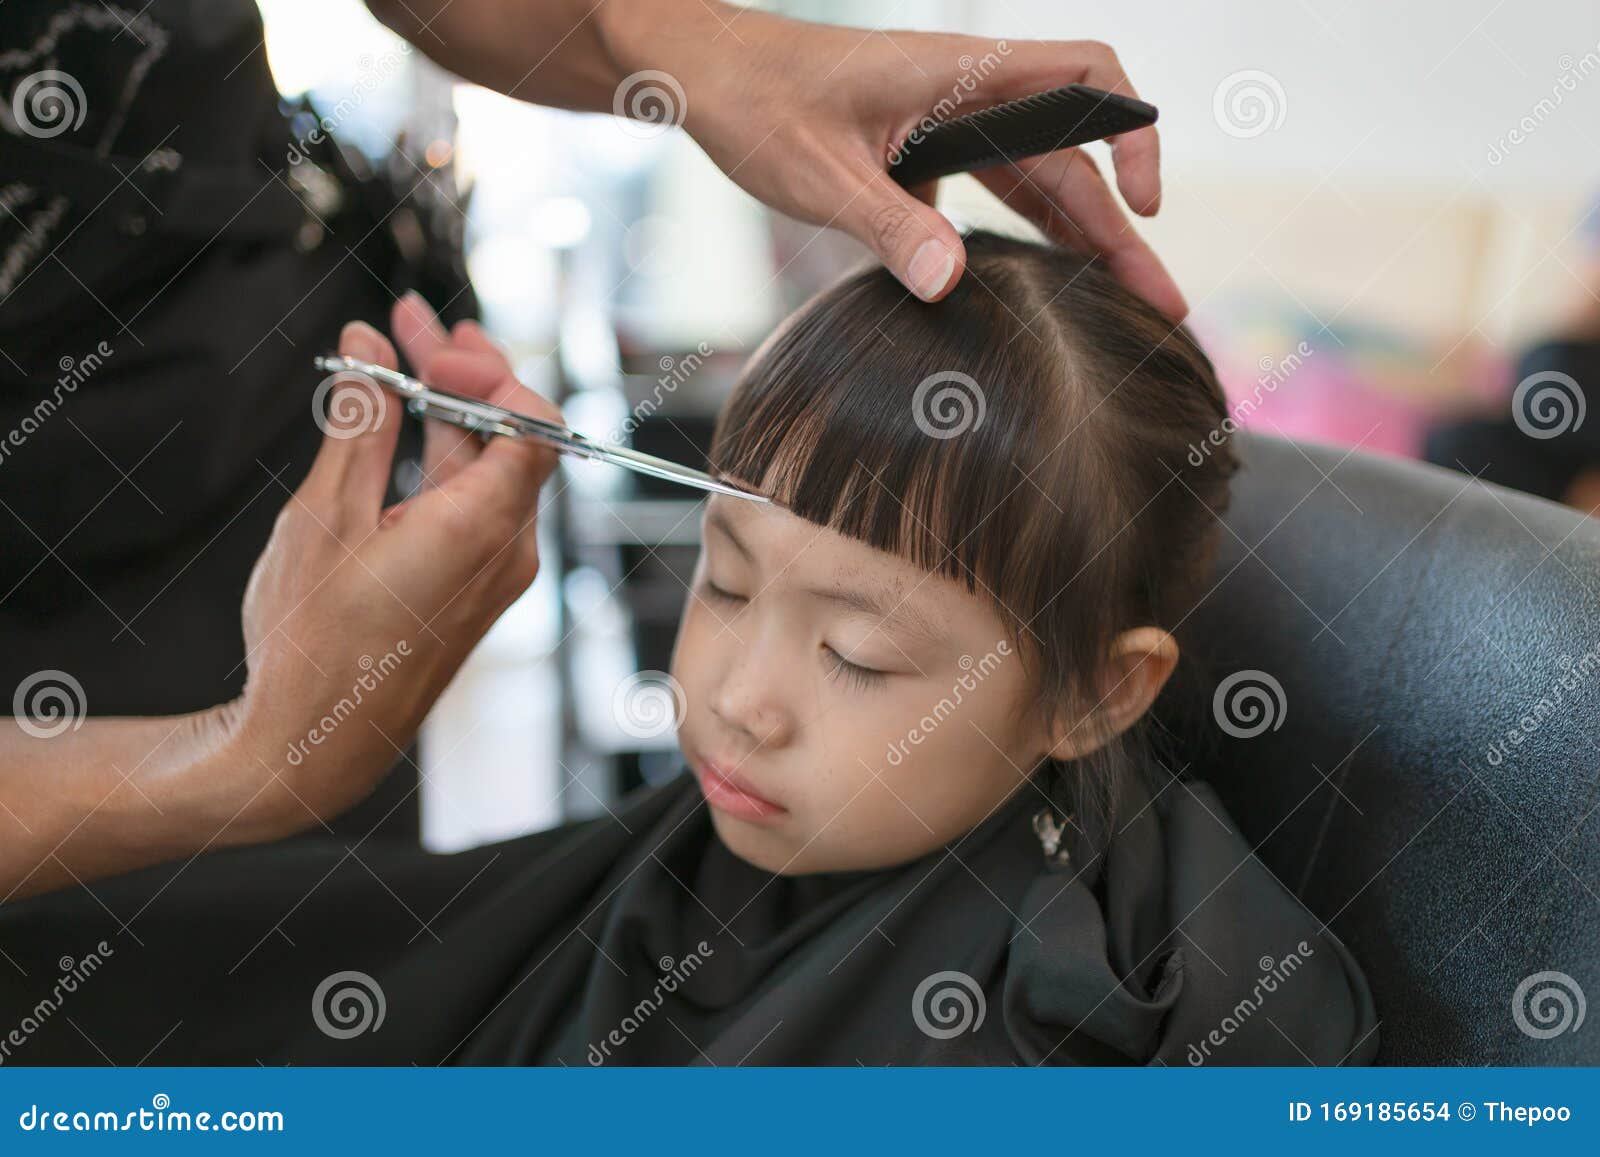 Ladies haircut in barbershop